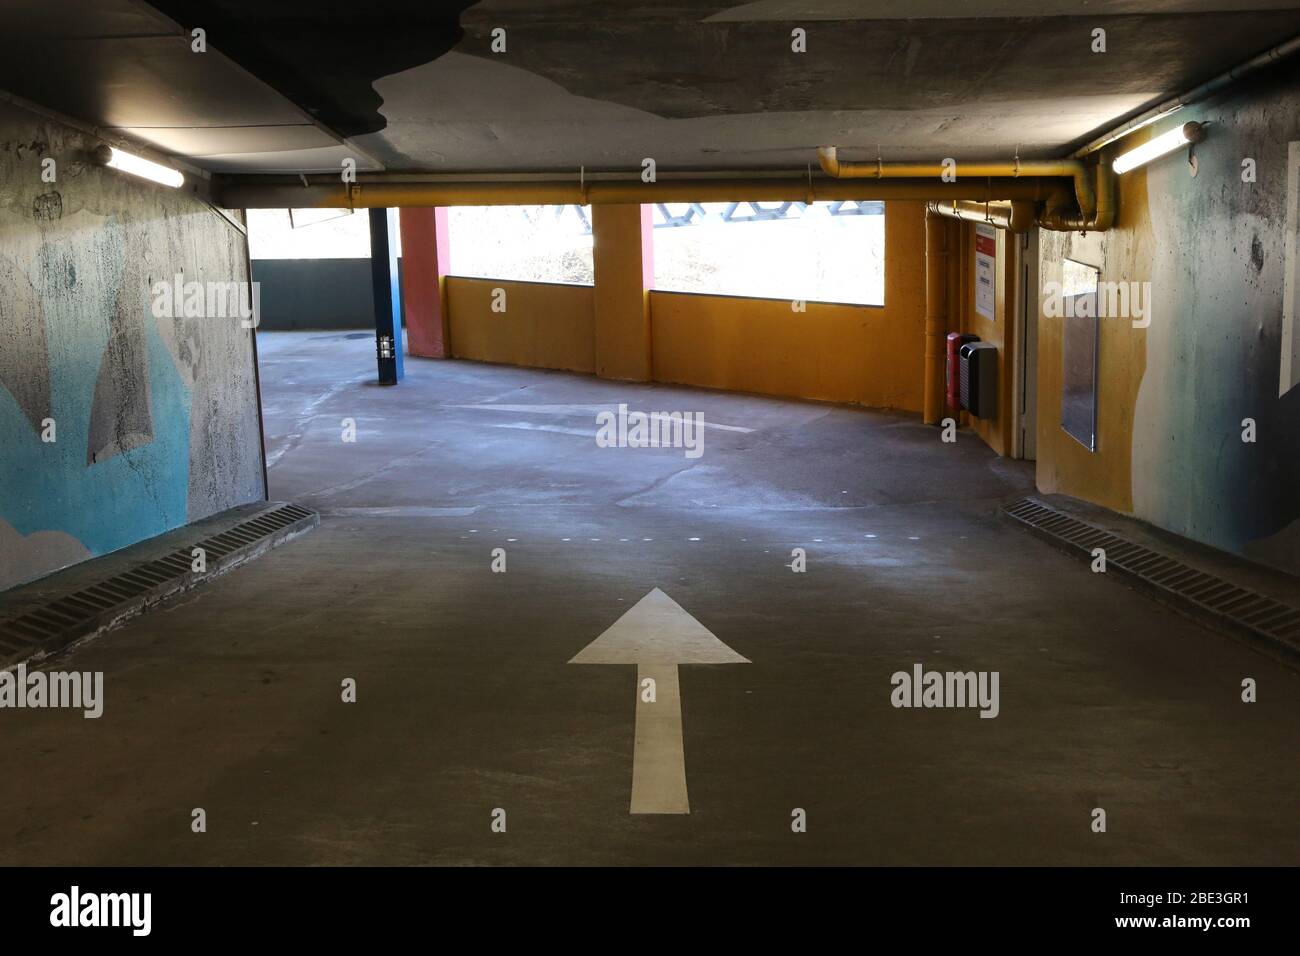 Flèche directionnelle dans un parking souterrain. Saint-Gervais-les-Bains. Haute-Savoie. France. Stock Photo